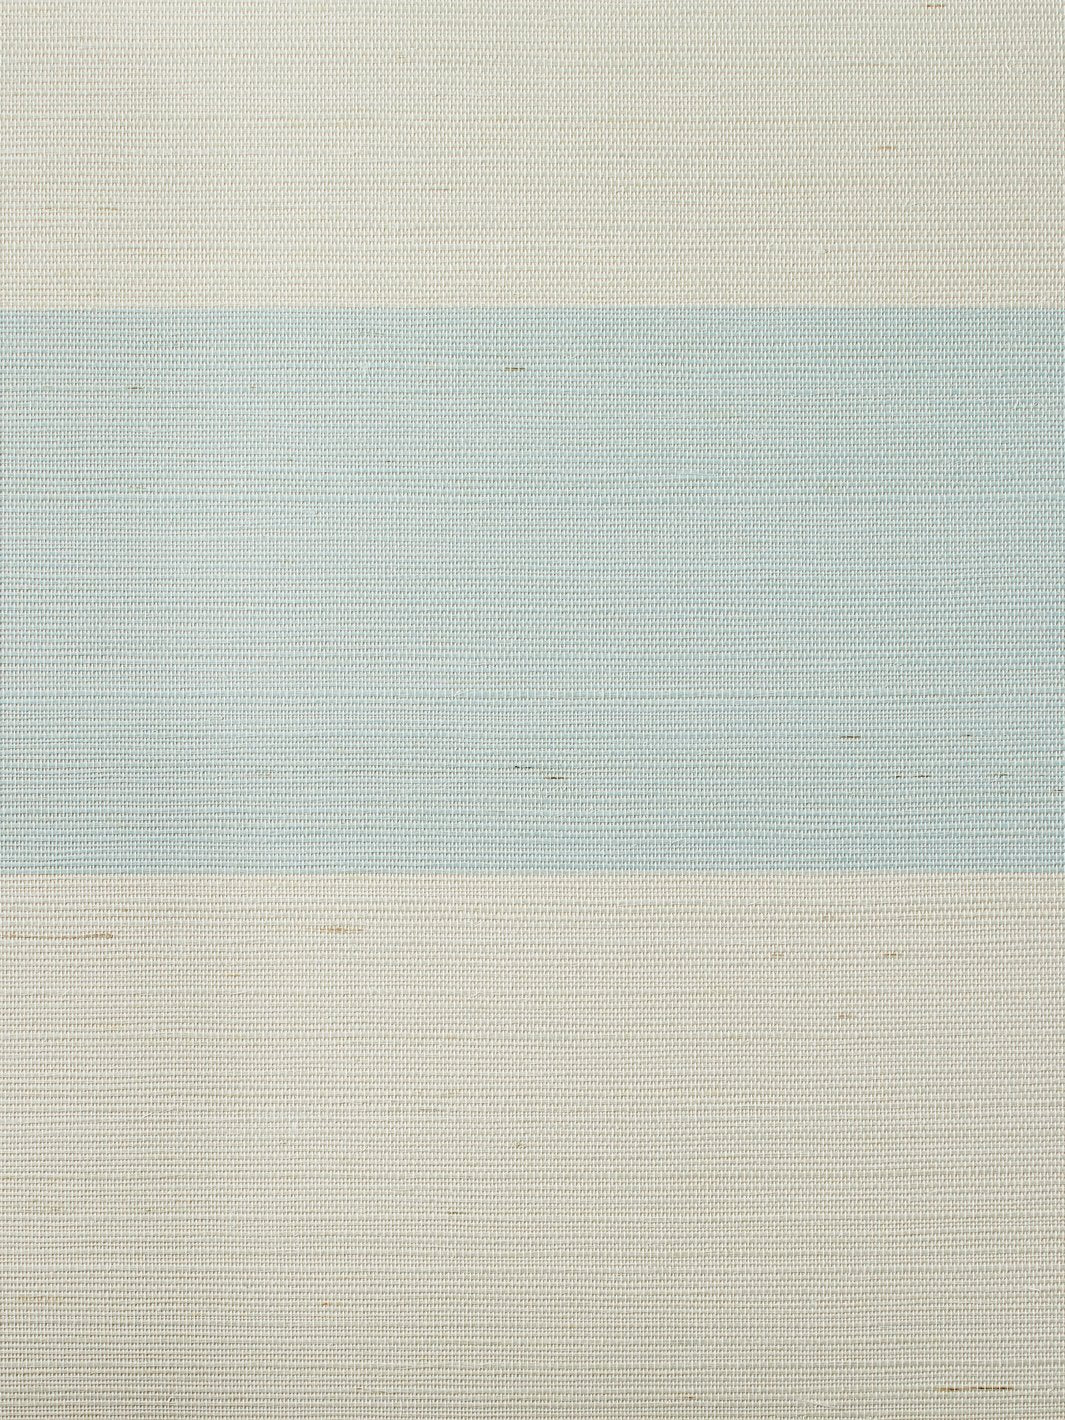 'Wide Stripe' Grasscloth' Wallpaper by Wallshoppe - Sky